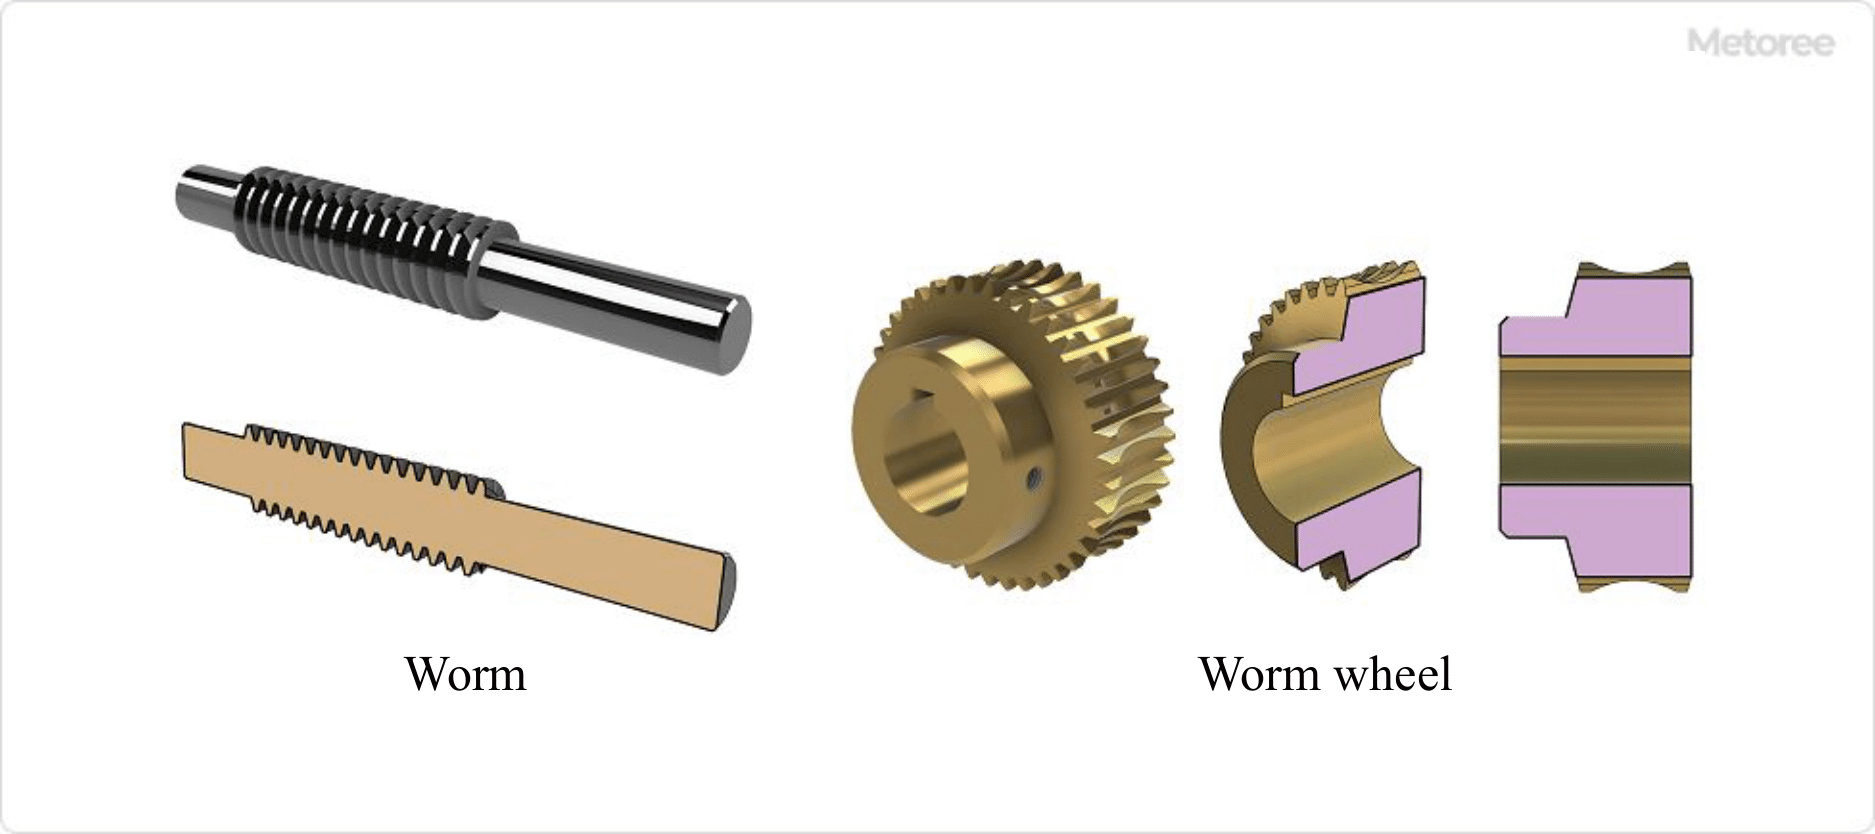 Figure 2. Principle of worm gear